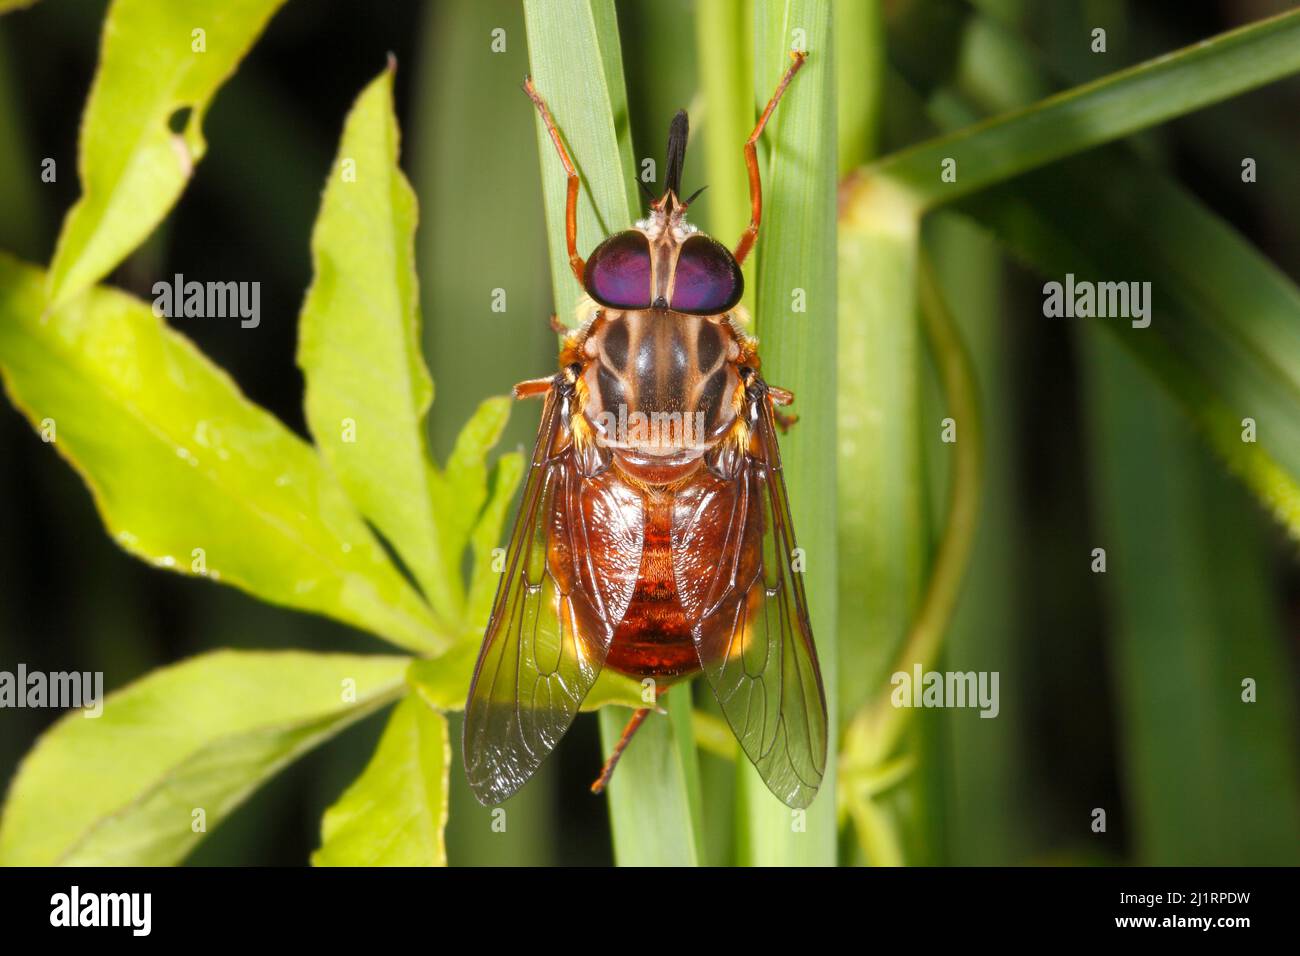 Märzfliege, Familie Tabanidae, Arten unbekannt. Auch bekannt als Horse Fly. Zeigt die Proboscis. Es besteht auch die Möglichkeit, dass dies ein Gewirr sein könnte Stockfoto